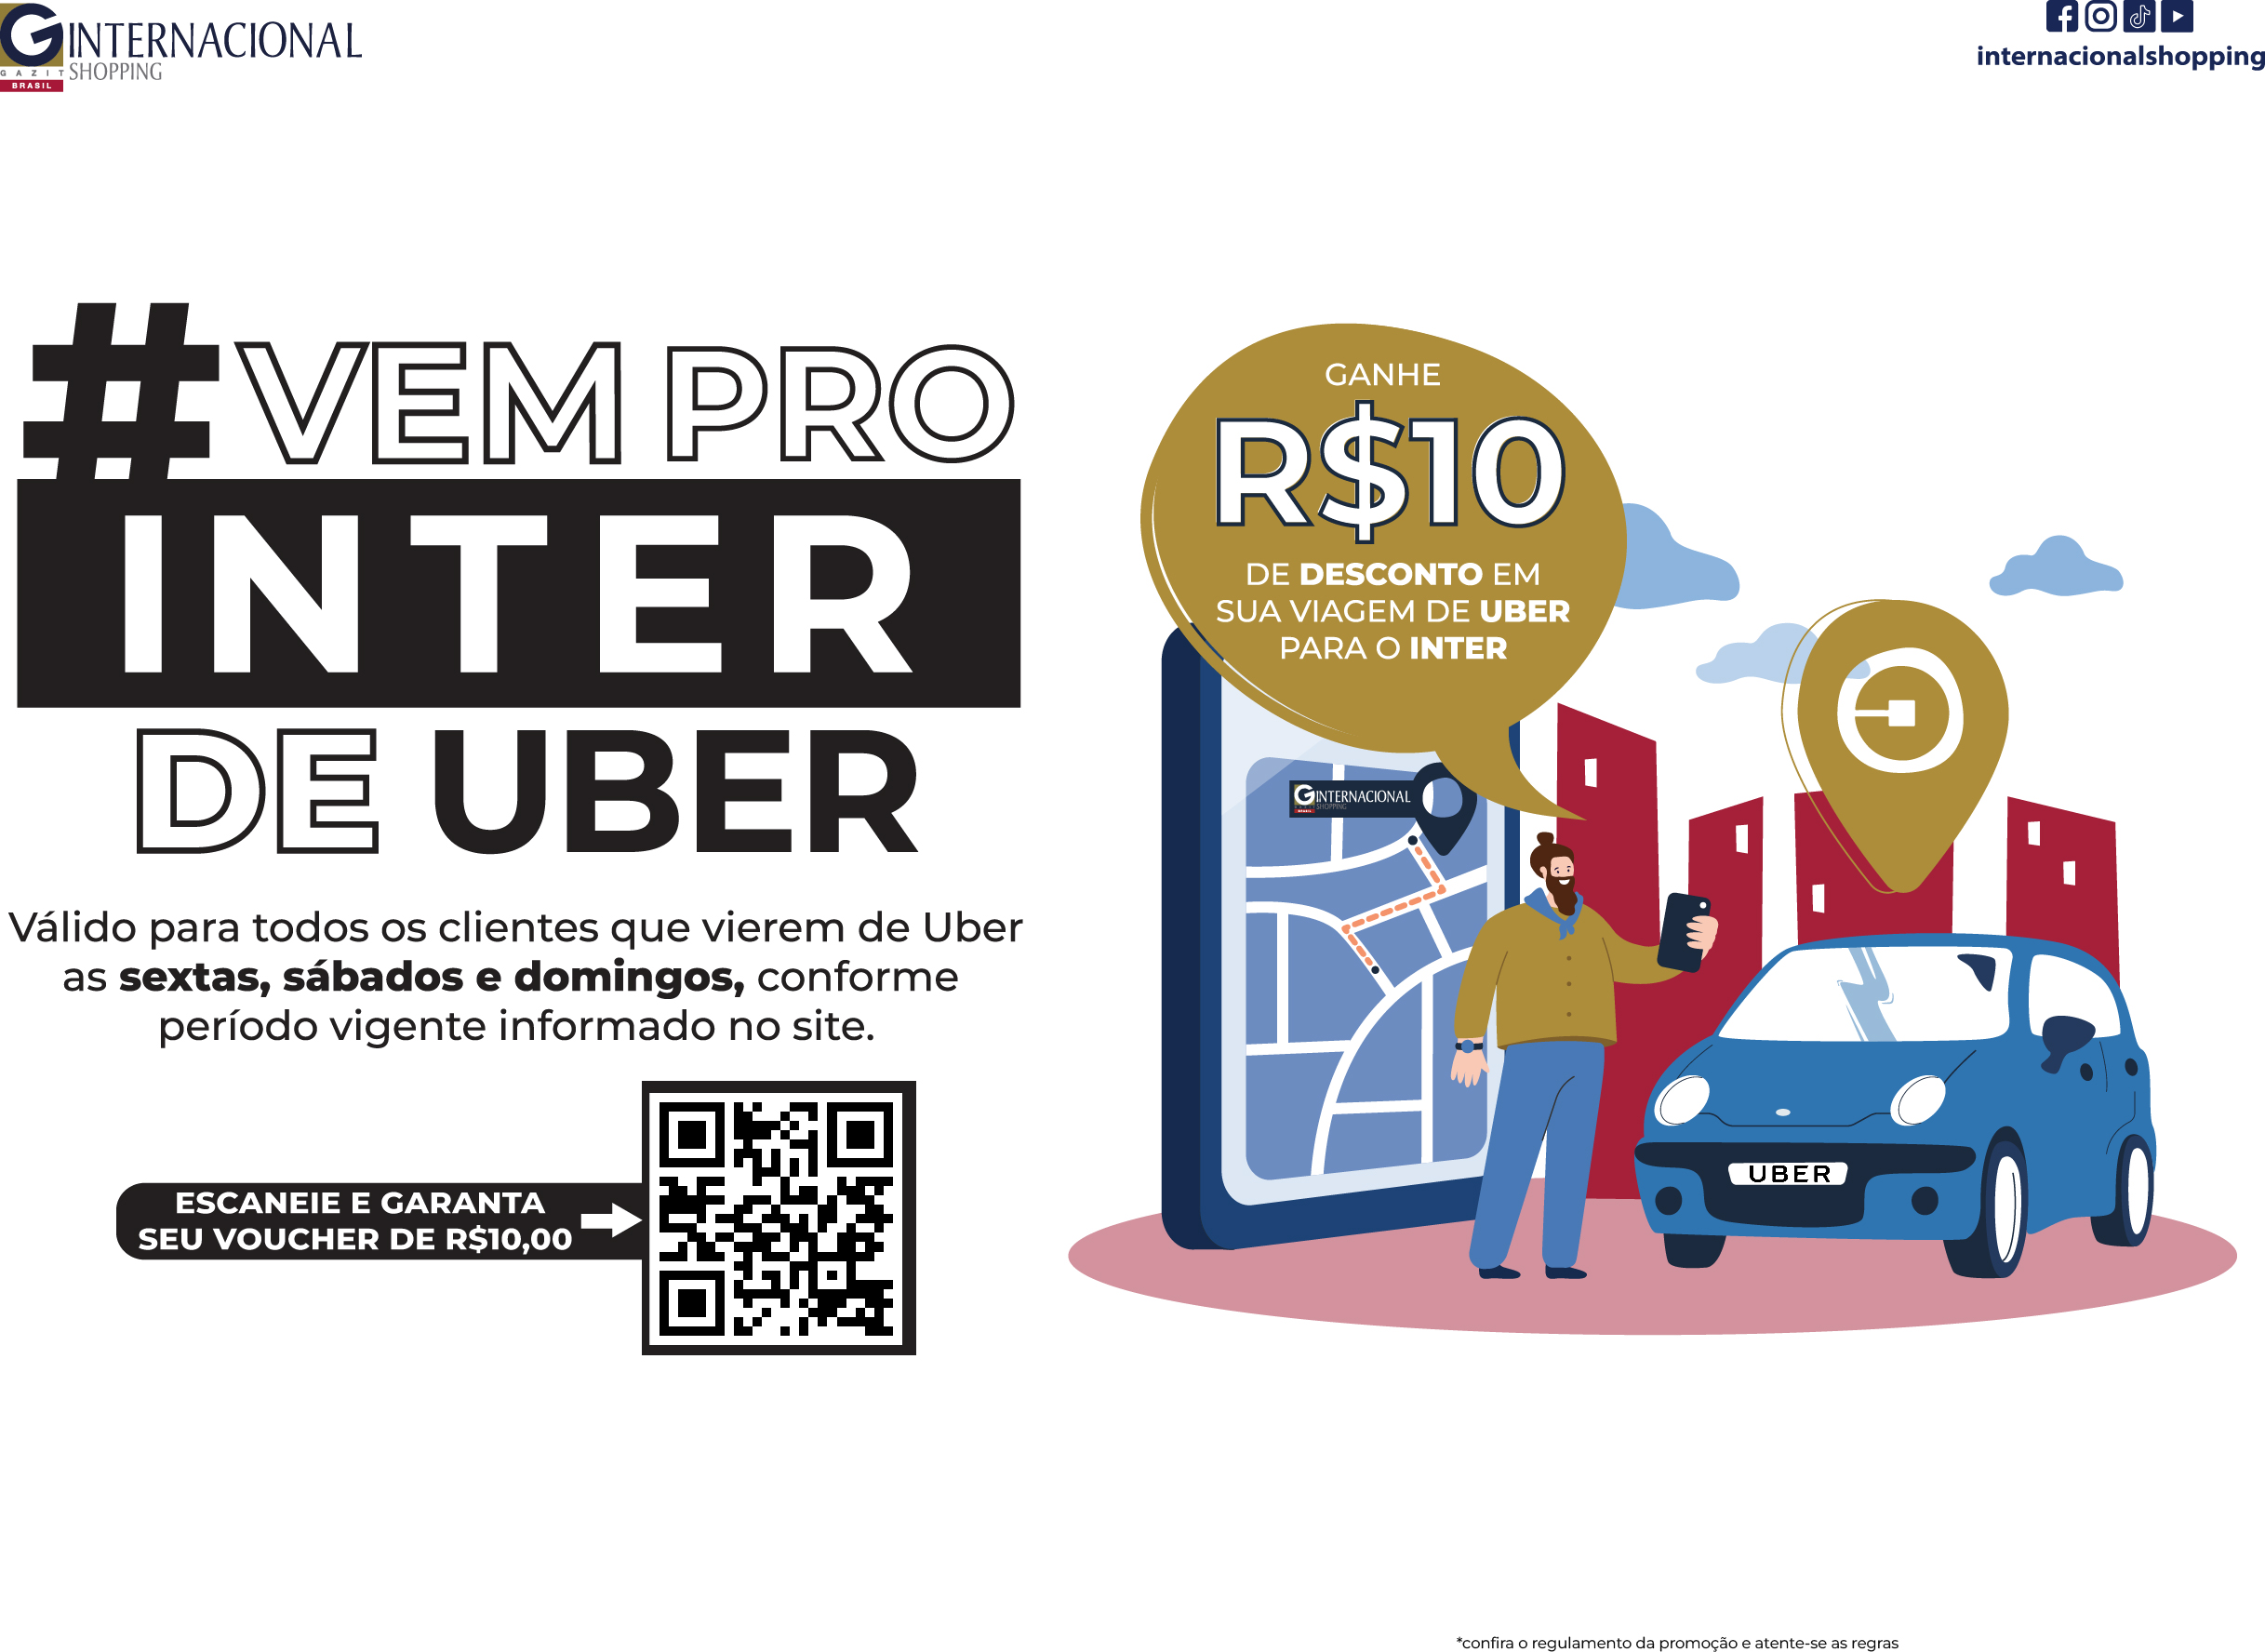 Vem Pro Inter de Uber